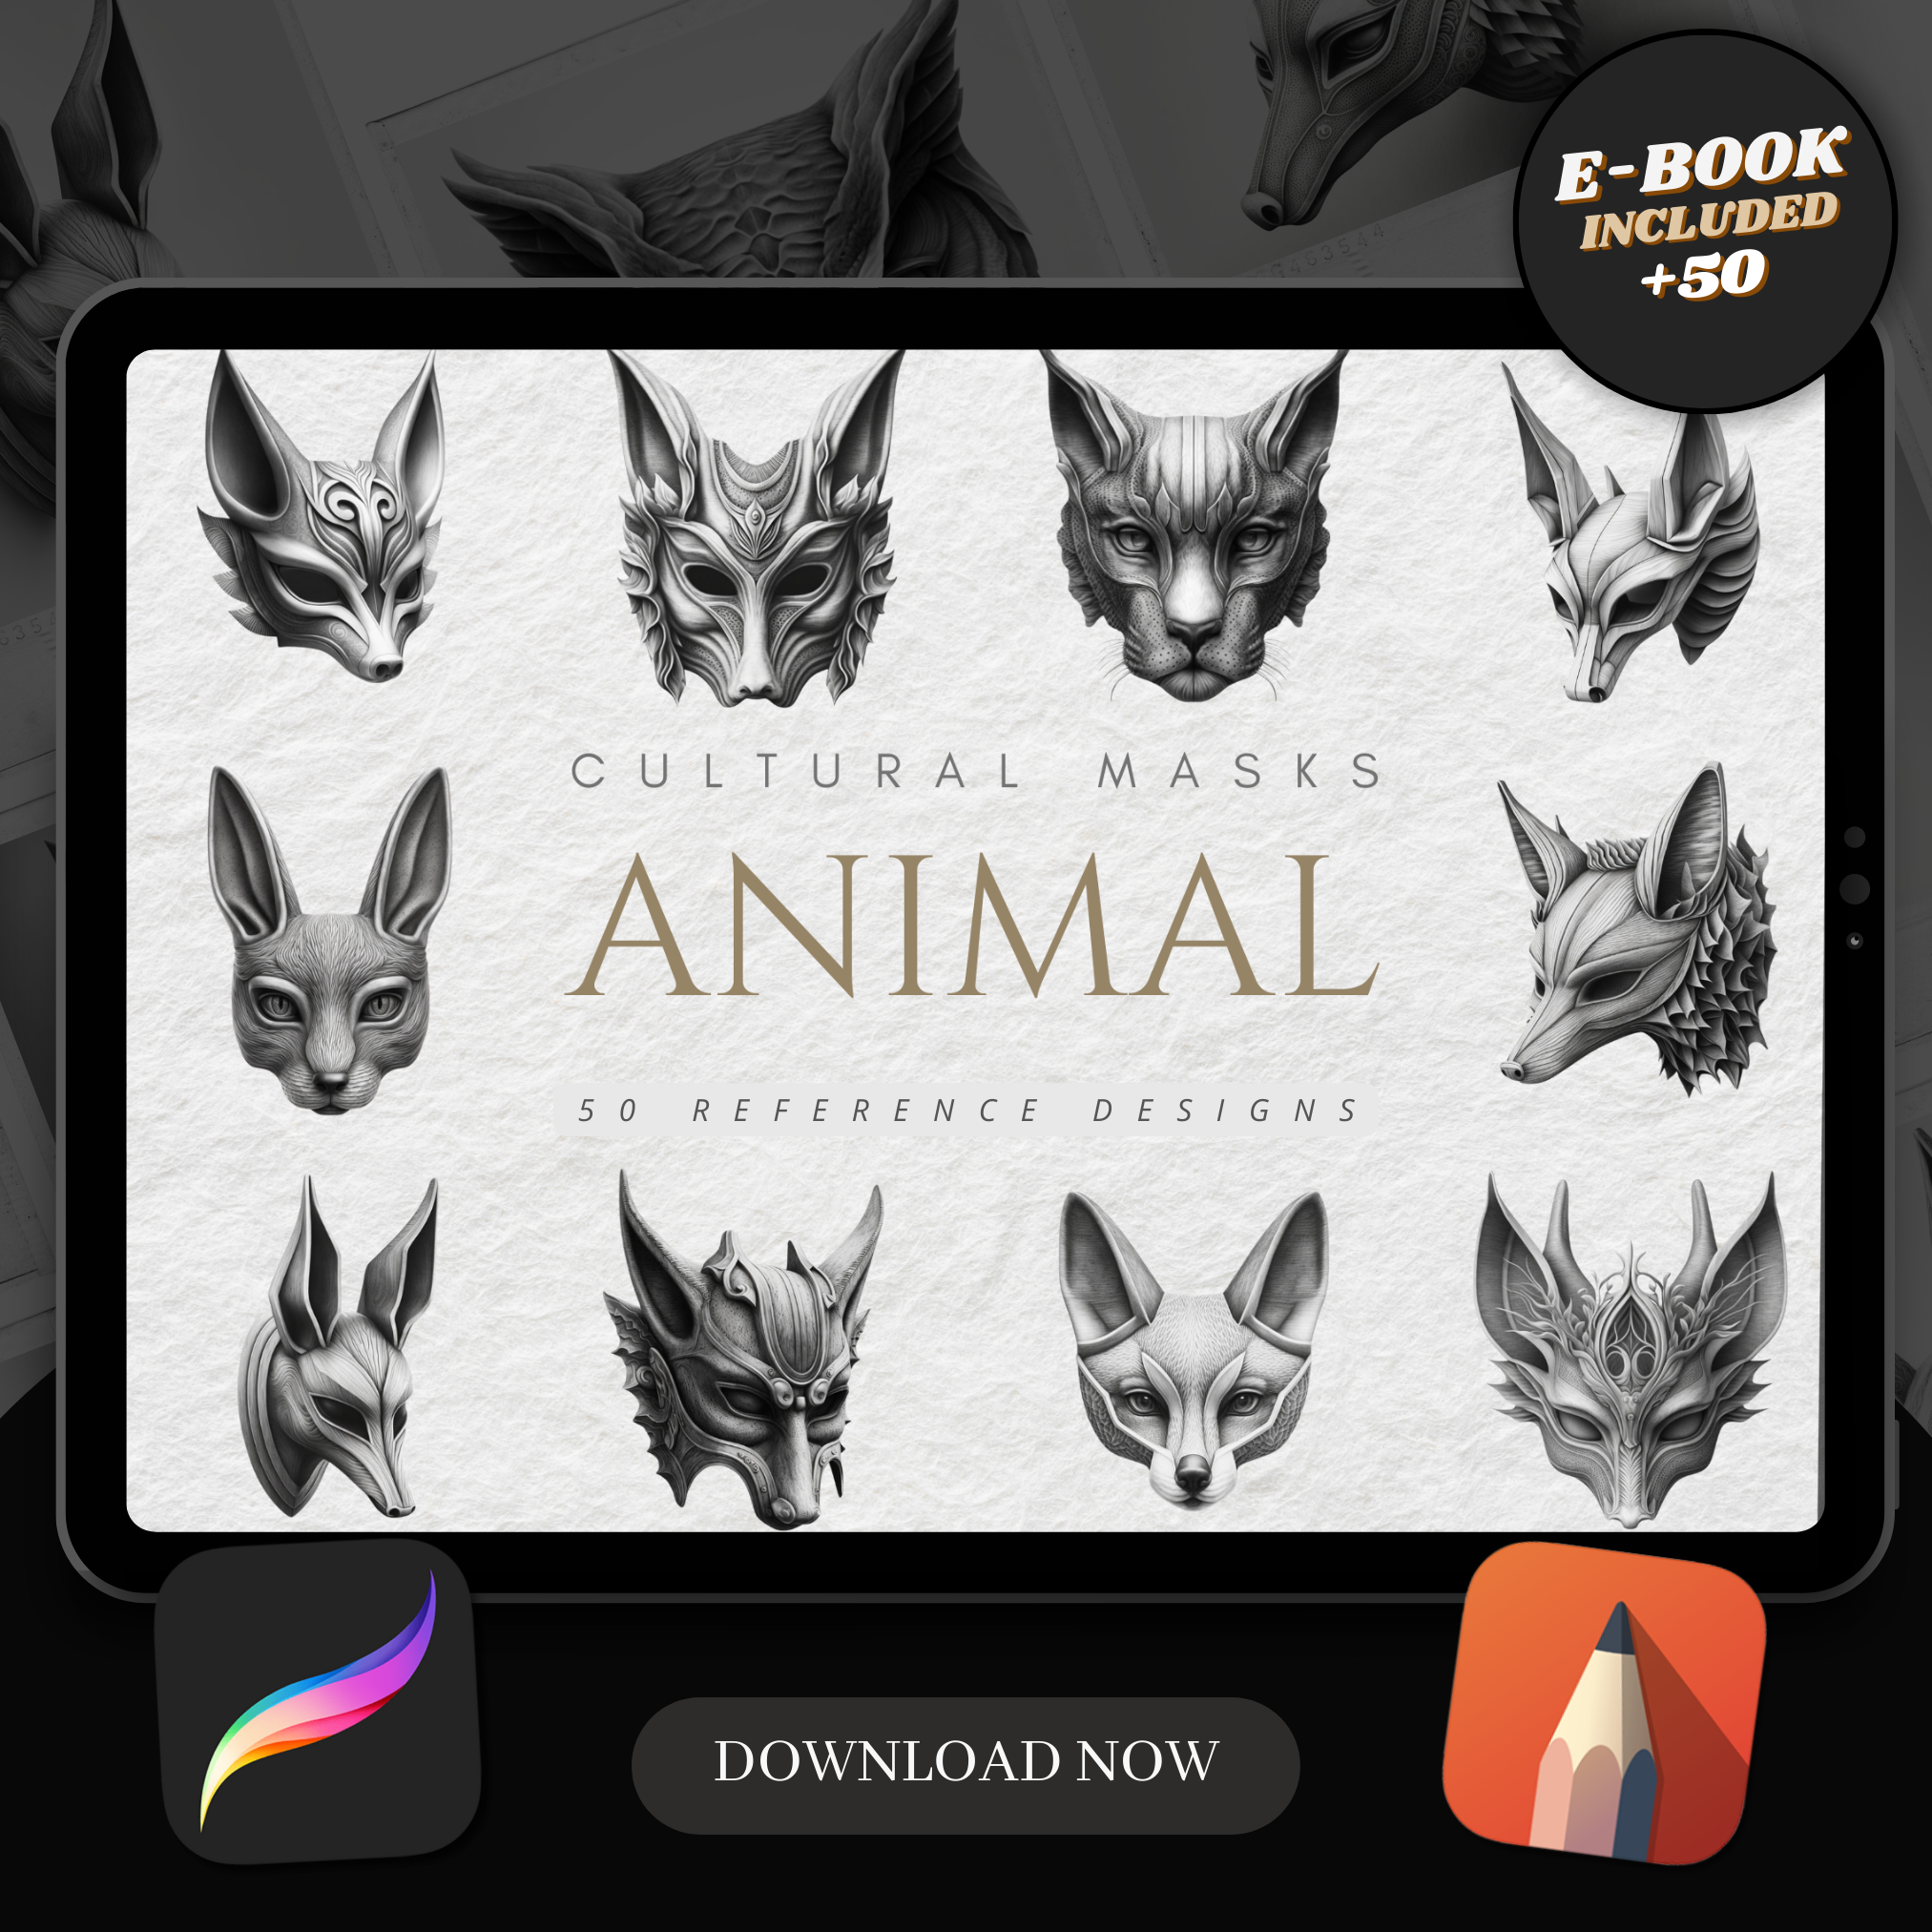 Animal Masks Digital Reference Design Collection: 50 Procreate & Sketchbook Images